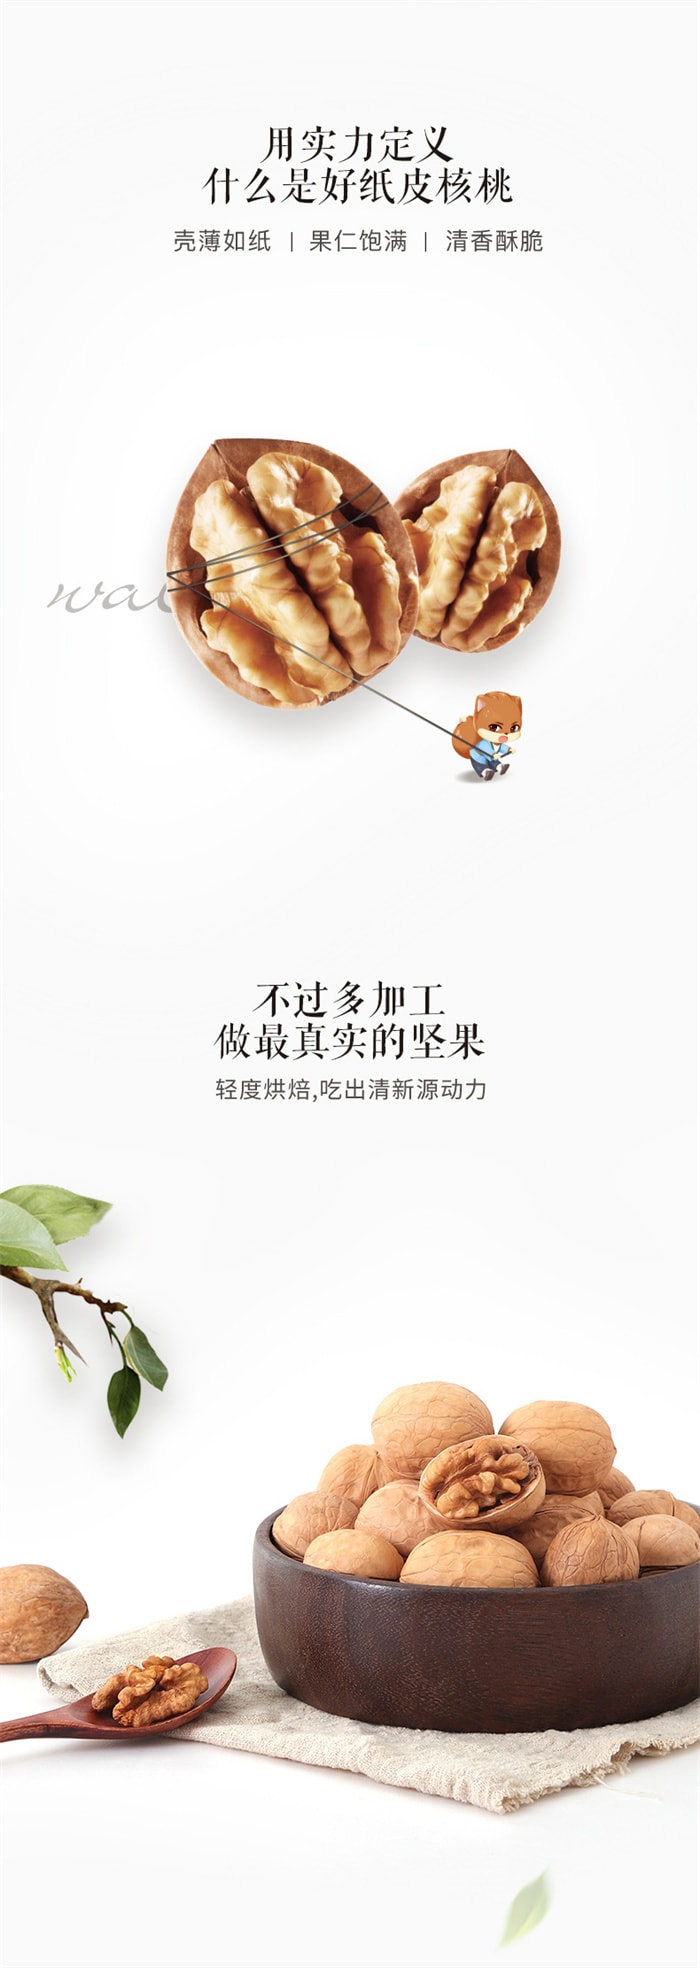 【中国直邮】三只松鼠 纸皮核桃 每日零食 坚果炒货特产干果薄皮核桃 120g/袋